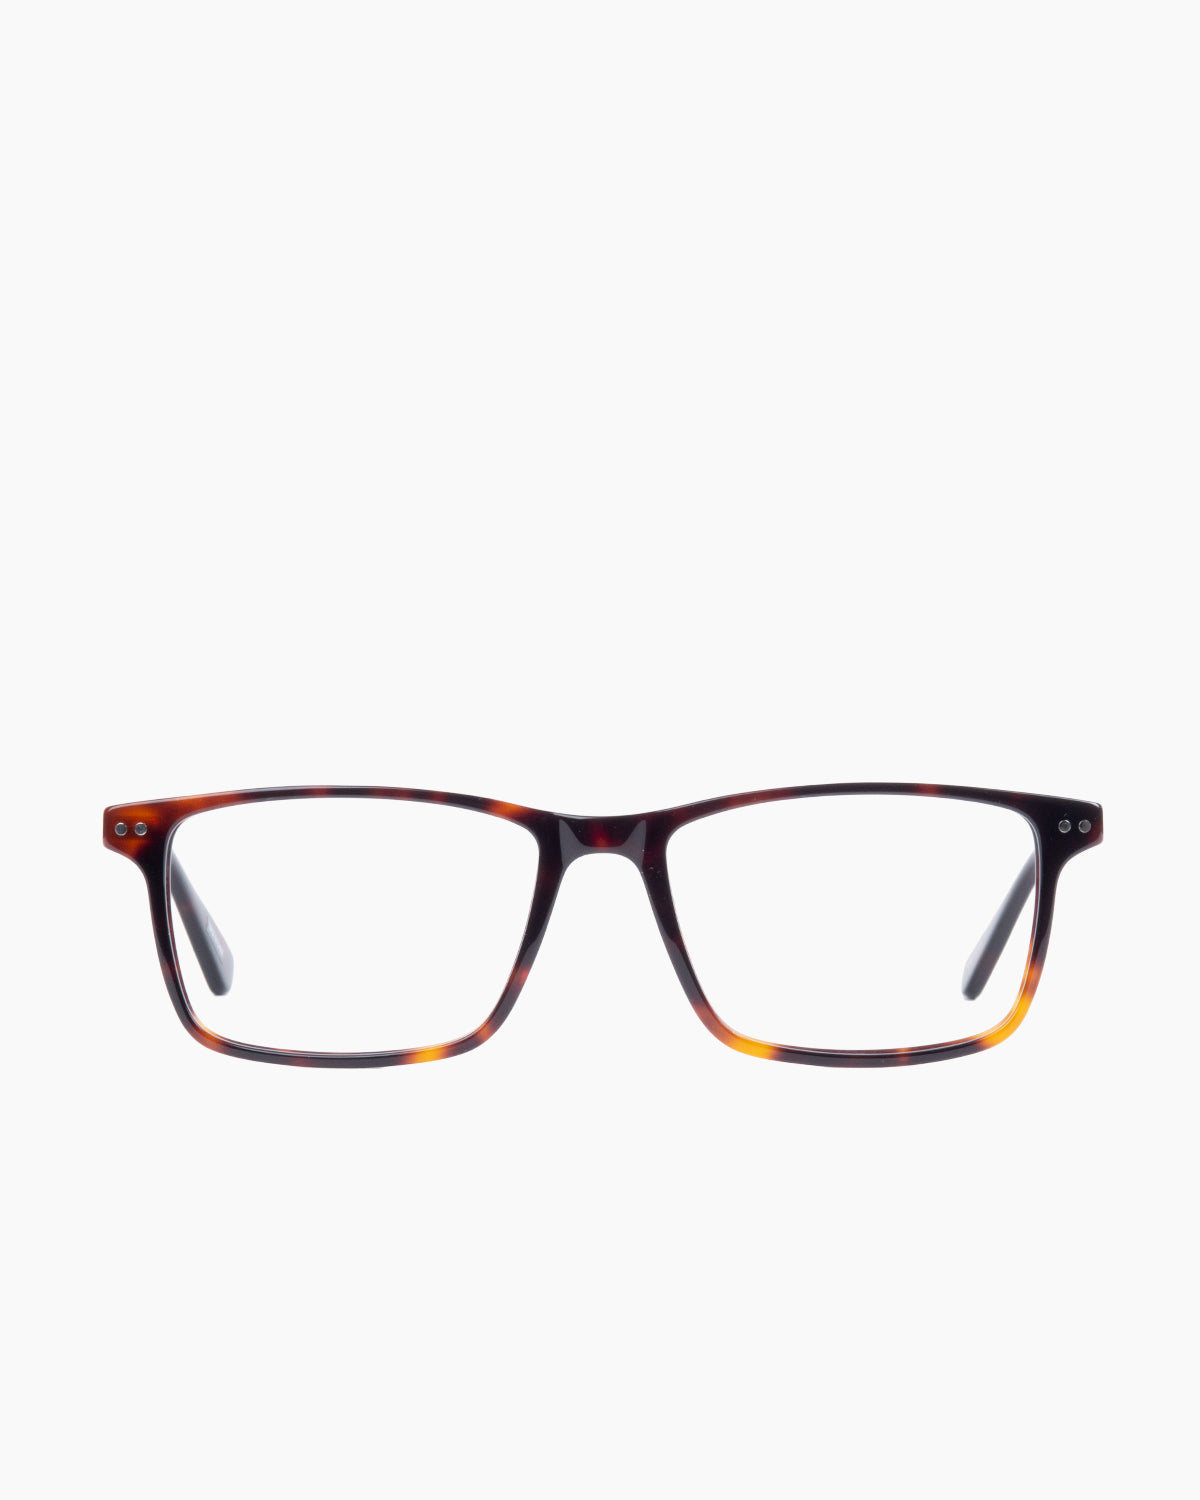 Evolve-Willis-336 | glasses bar